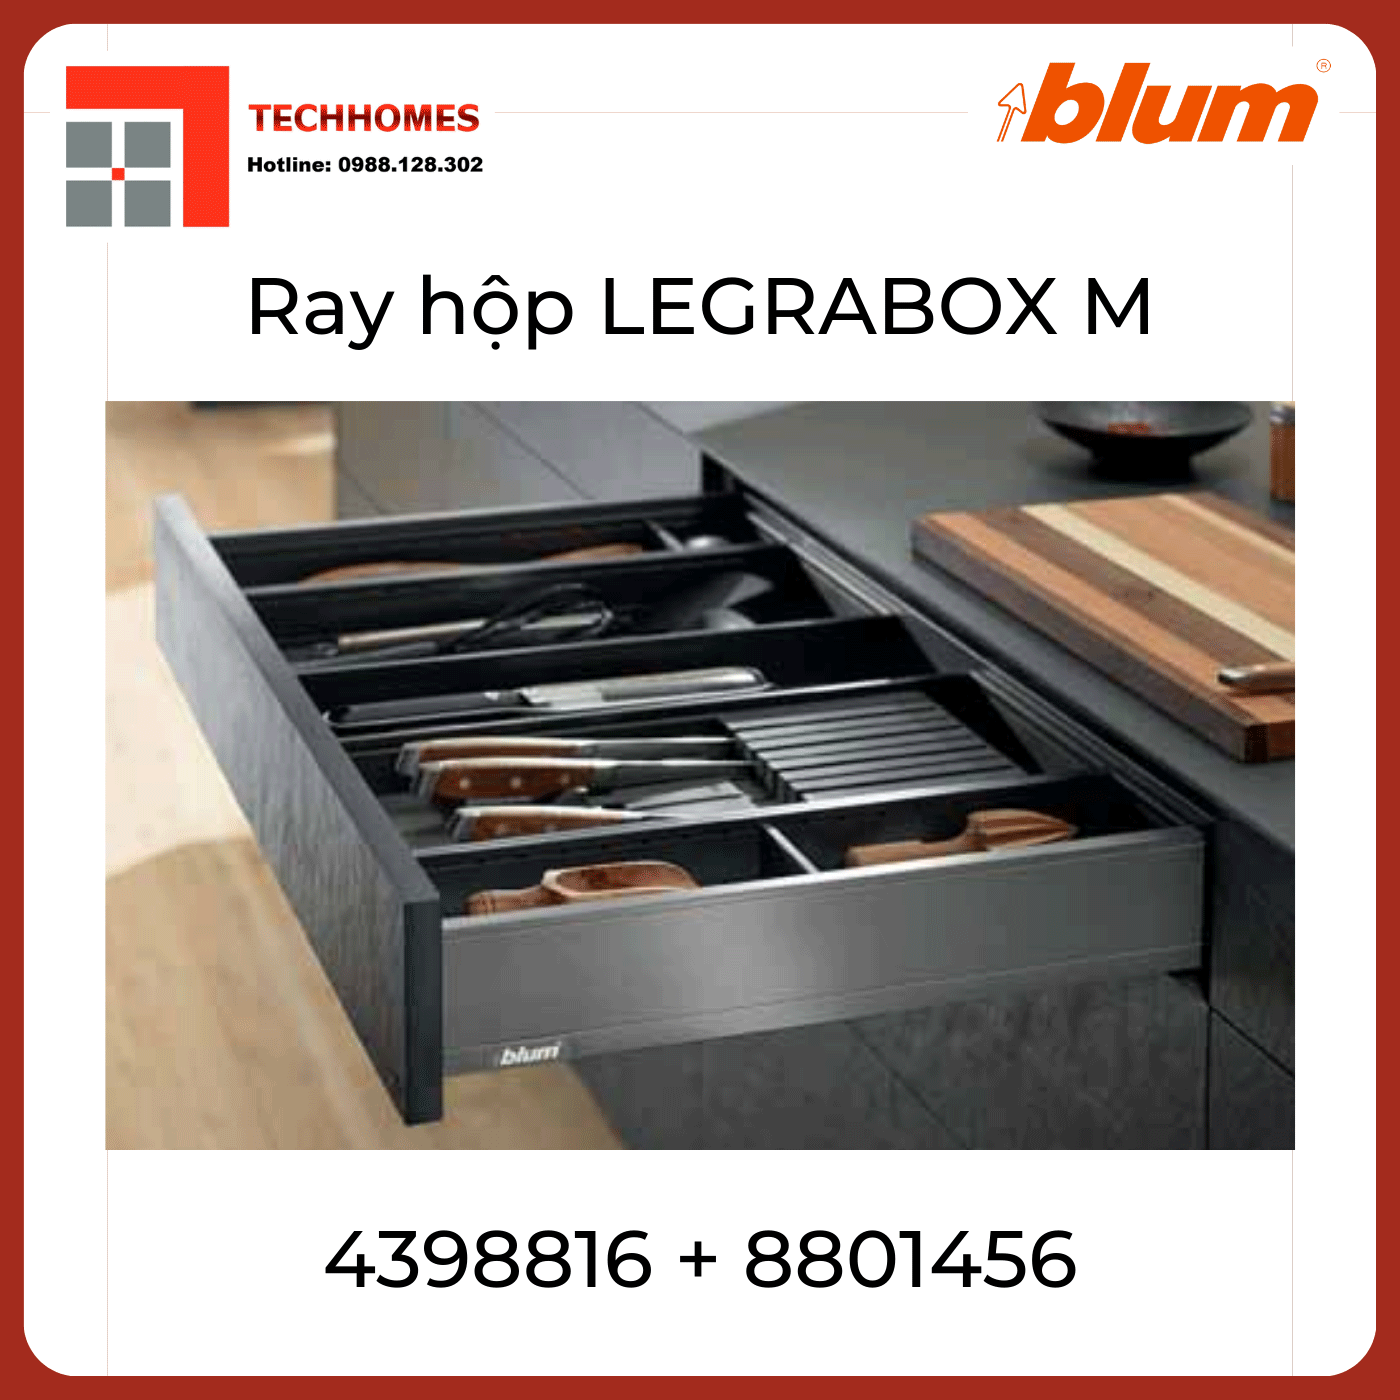 Trọn bộ ray hộp LEGRABOX M - Blum 70kg xám - LGM70kgxam